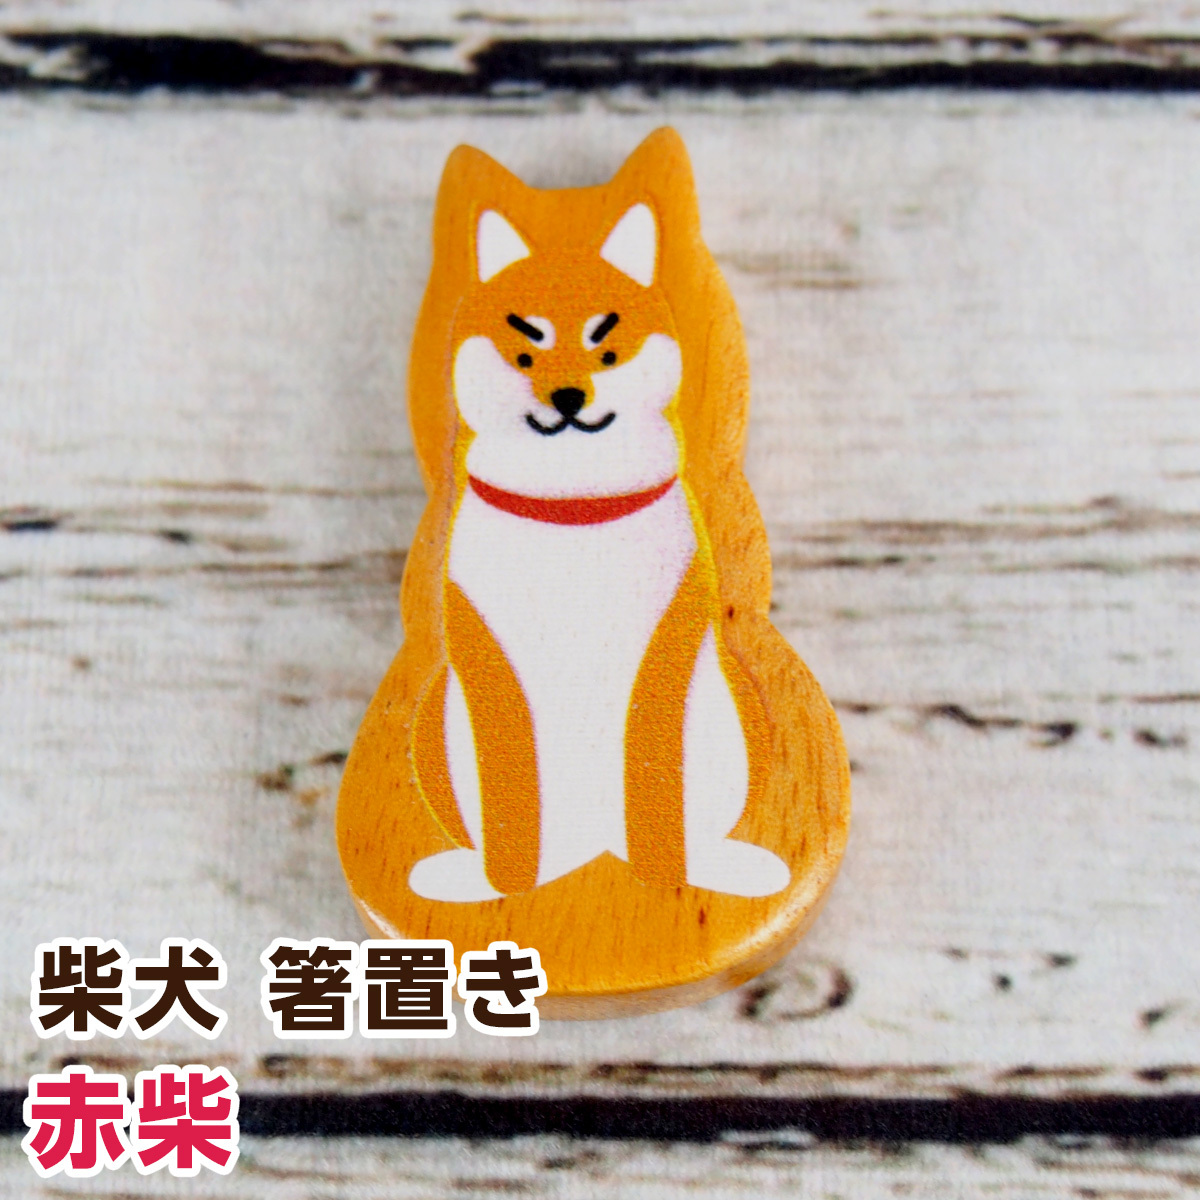 コージカンパニー 柴犬 箸置き 茶柴犬×1個の商品画像